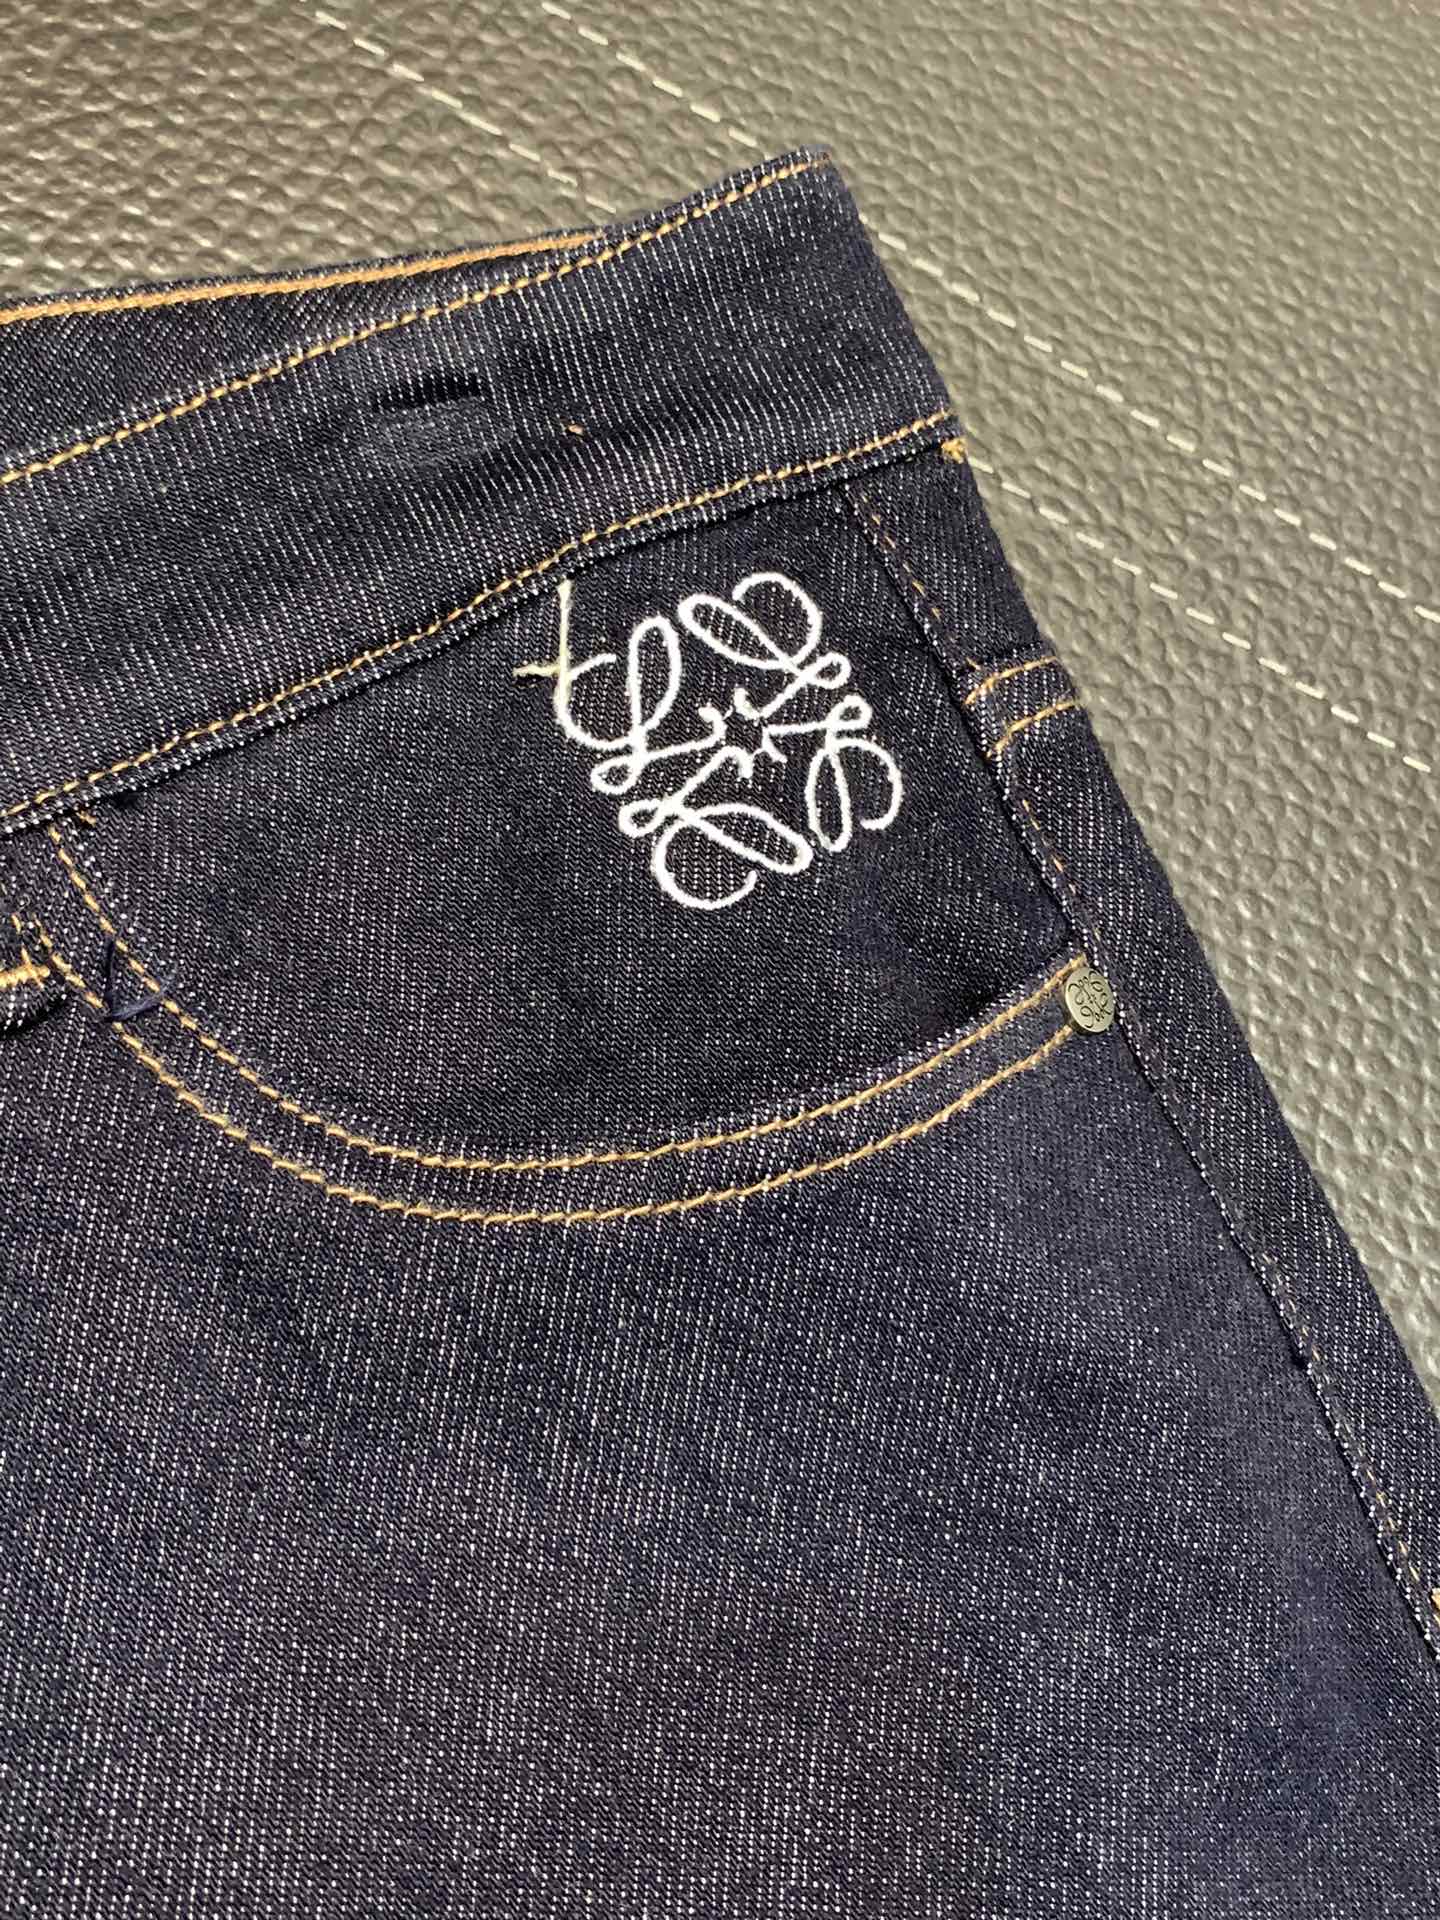 Loewe罗意威独家专供新款休闲牛仔裤高端版本专柜定制面料透气舒适度高细节无可挑剔品牌元素设计理念体现高